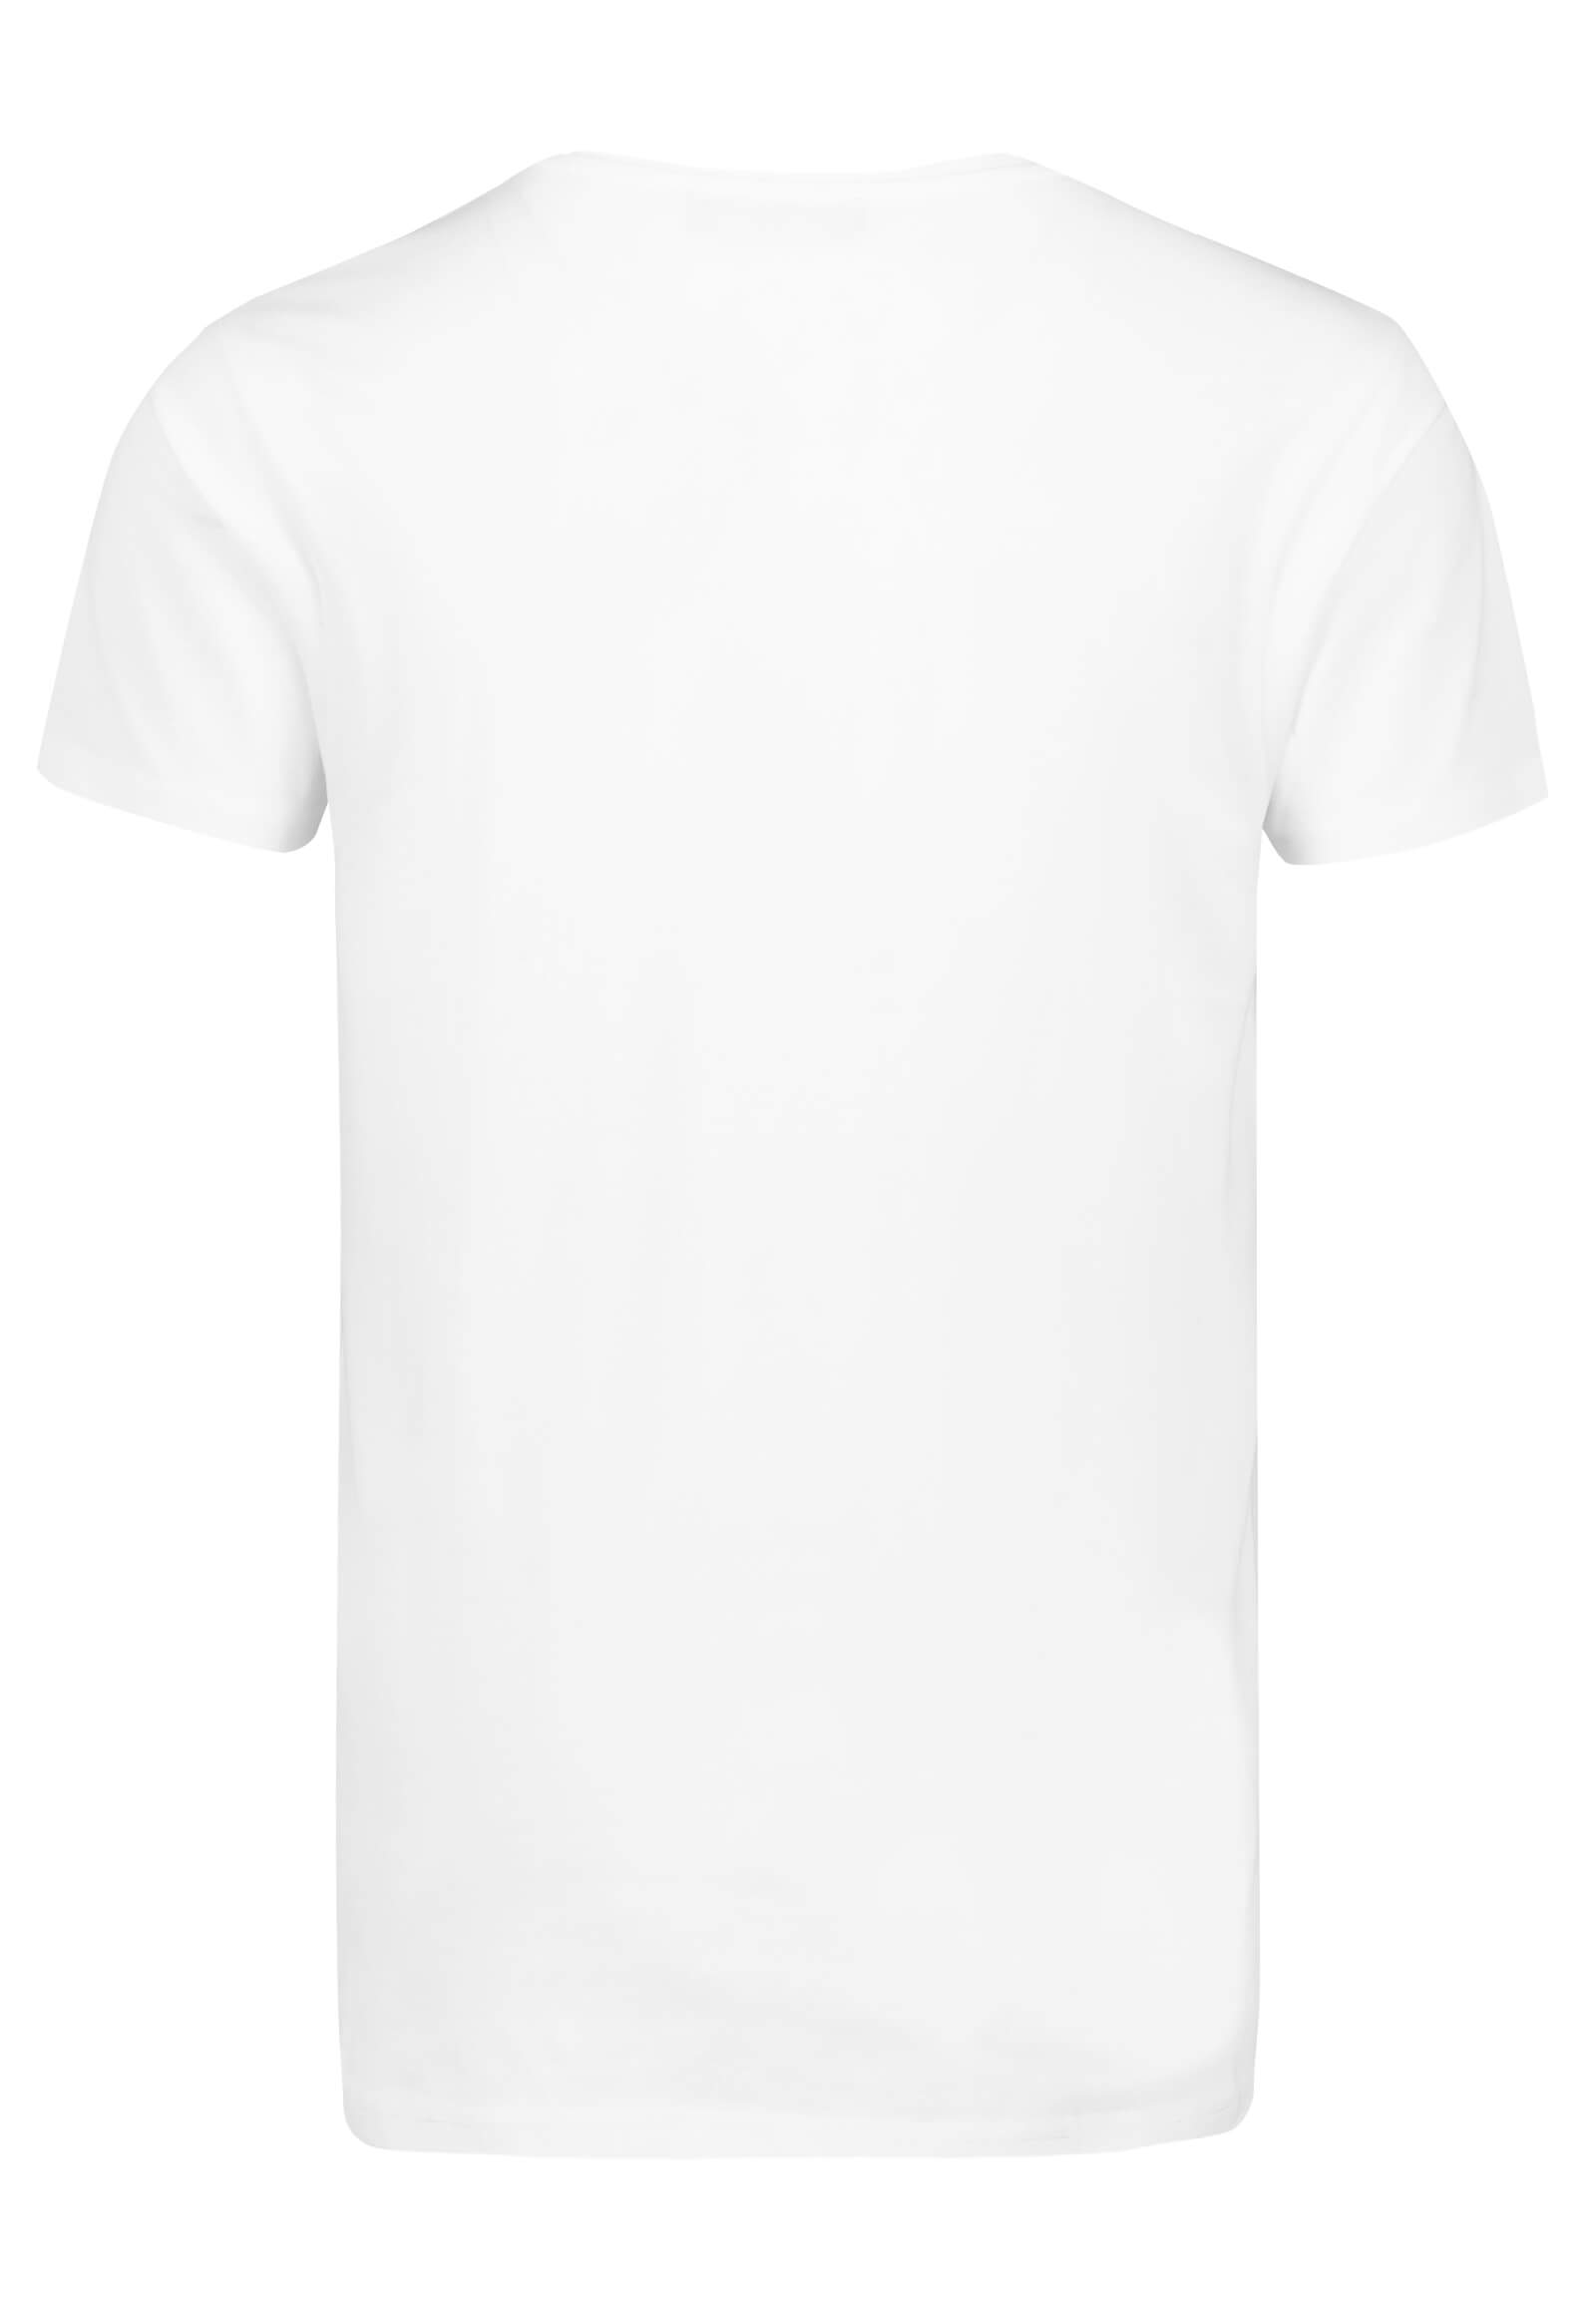 T-Shirt mit Surfer Print